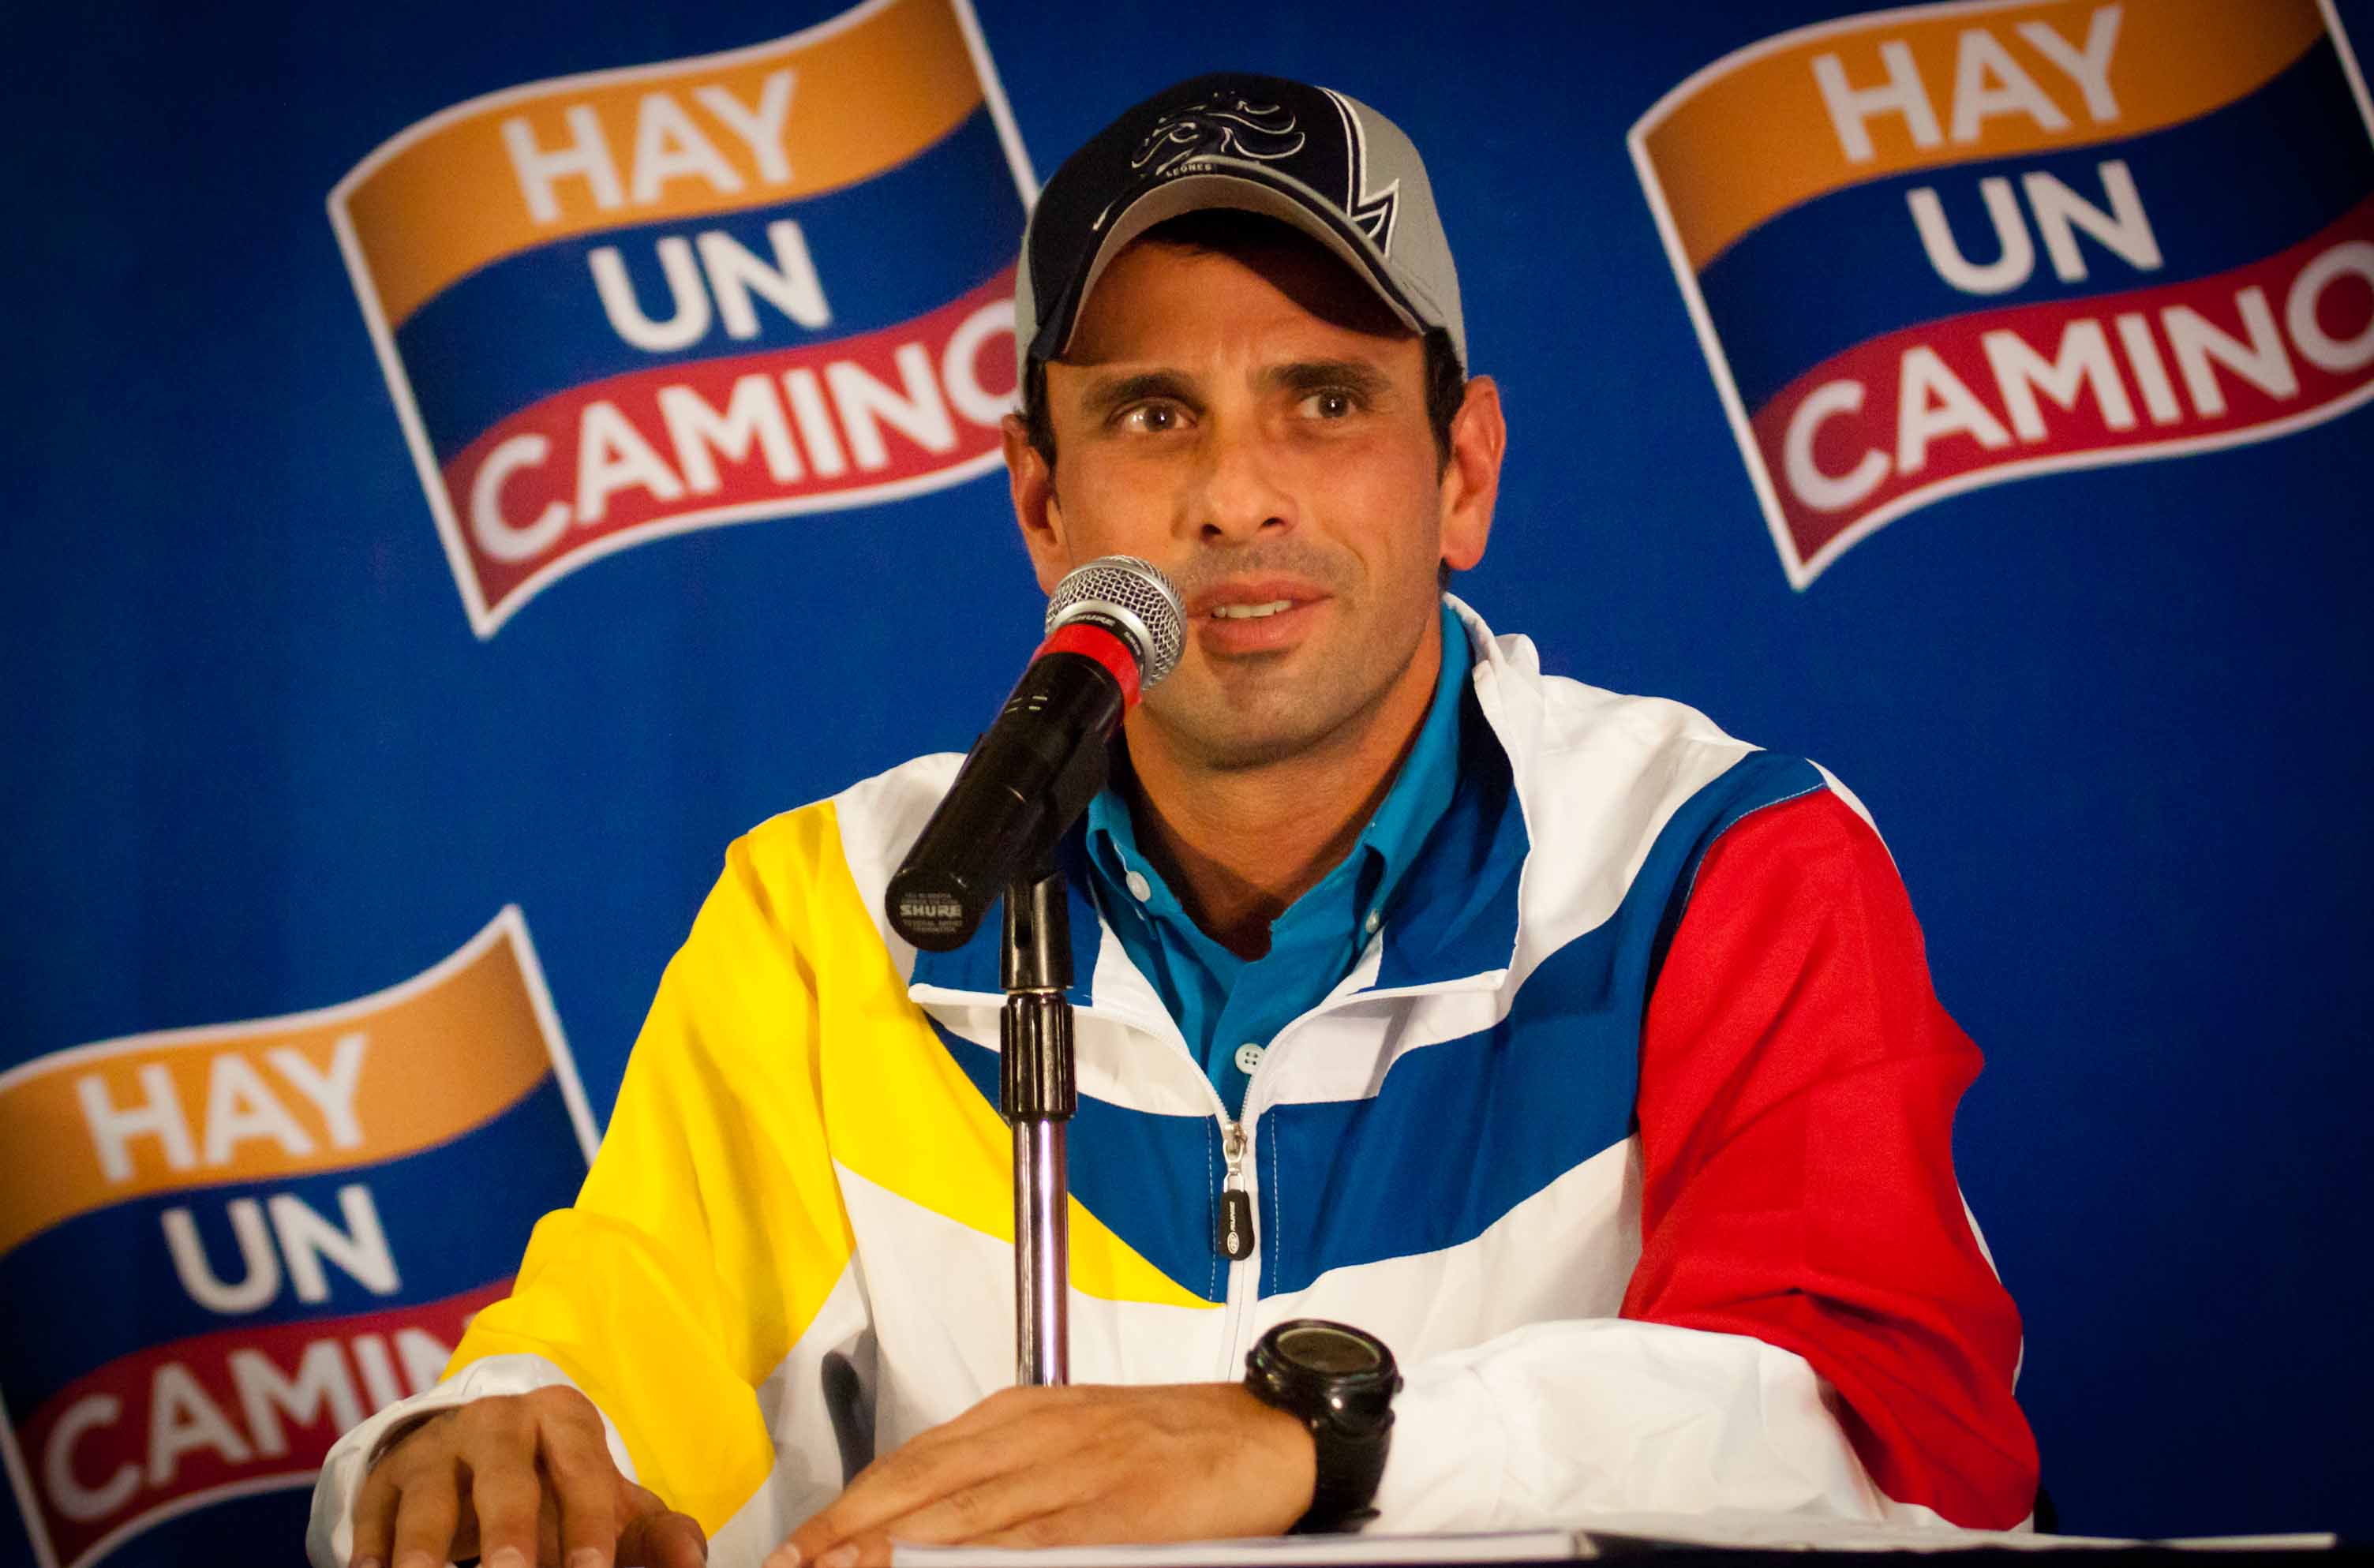 Capriles aseguró que está claro que la oposición es la inmensa mayoría y que “es contundente que quienes están en el poder ya no movilizan ni tienen el apoyo que en algún momento gozaron”.